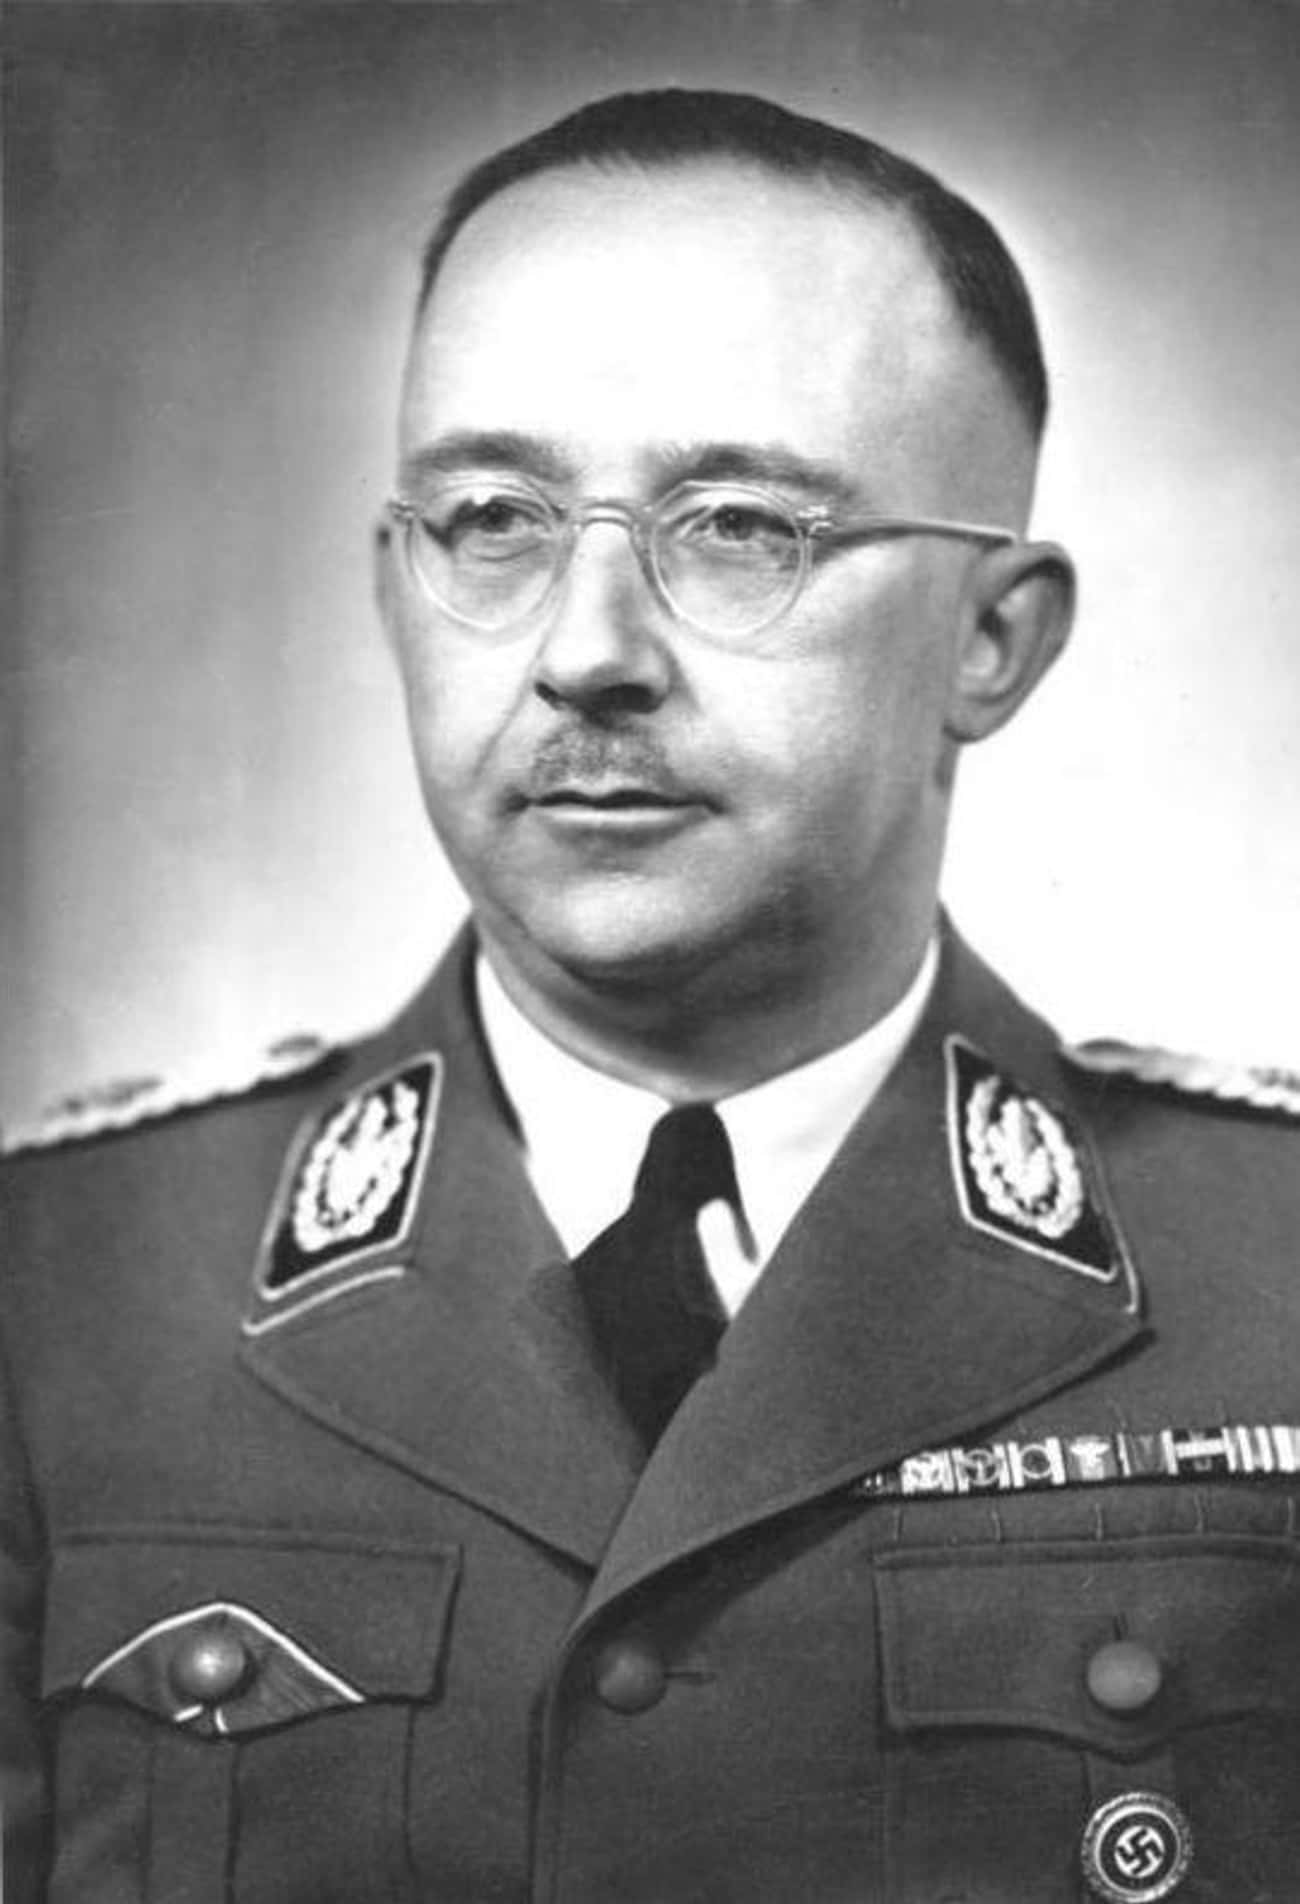 Rascher Was Initially One Of Heinrich Himmler's Favorite Scientists